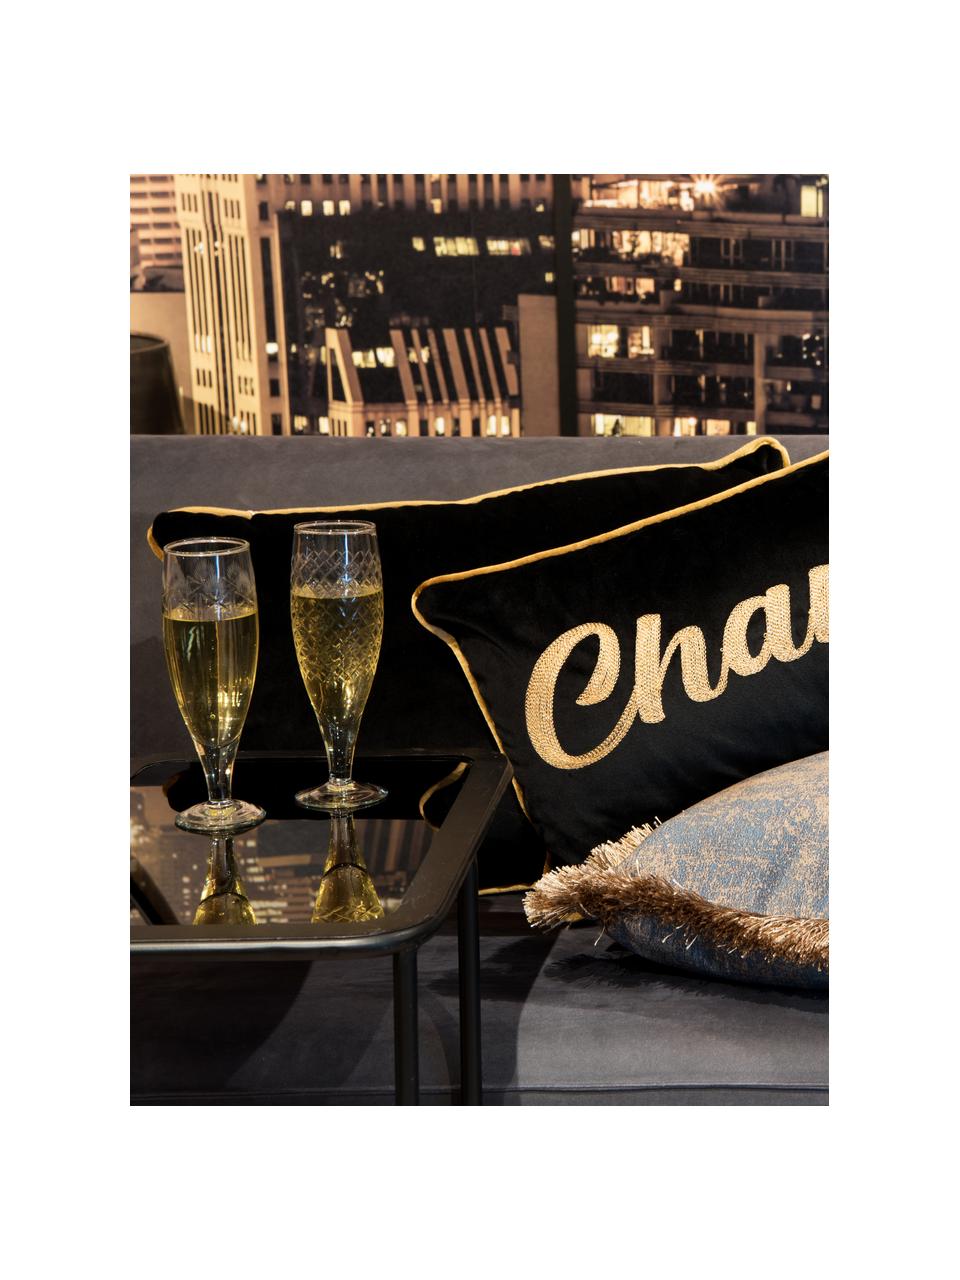 Cojín de terciopelo Champagne, con relleno, 100% terciopelo de poliéster, Negro, dorado, An 30 x L 80 cm